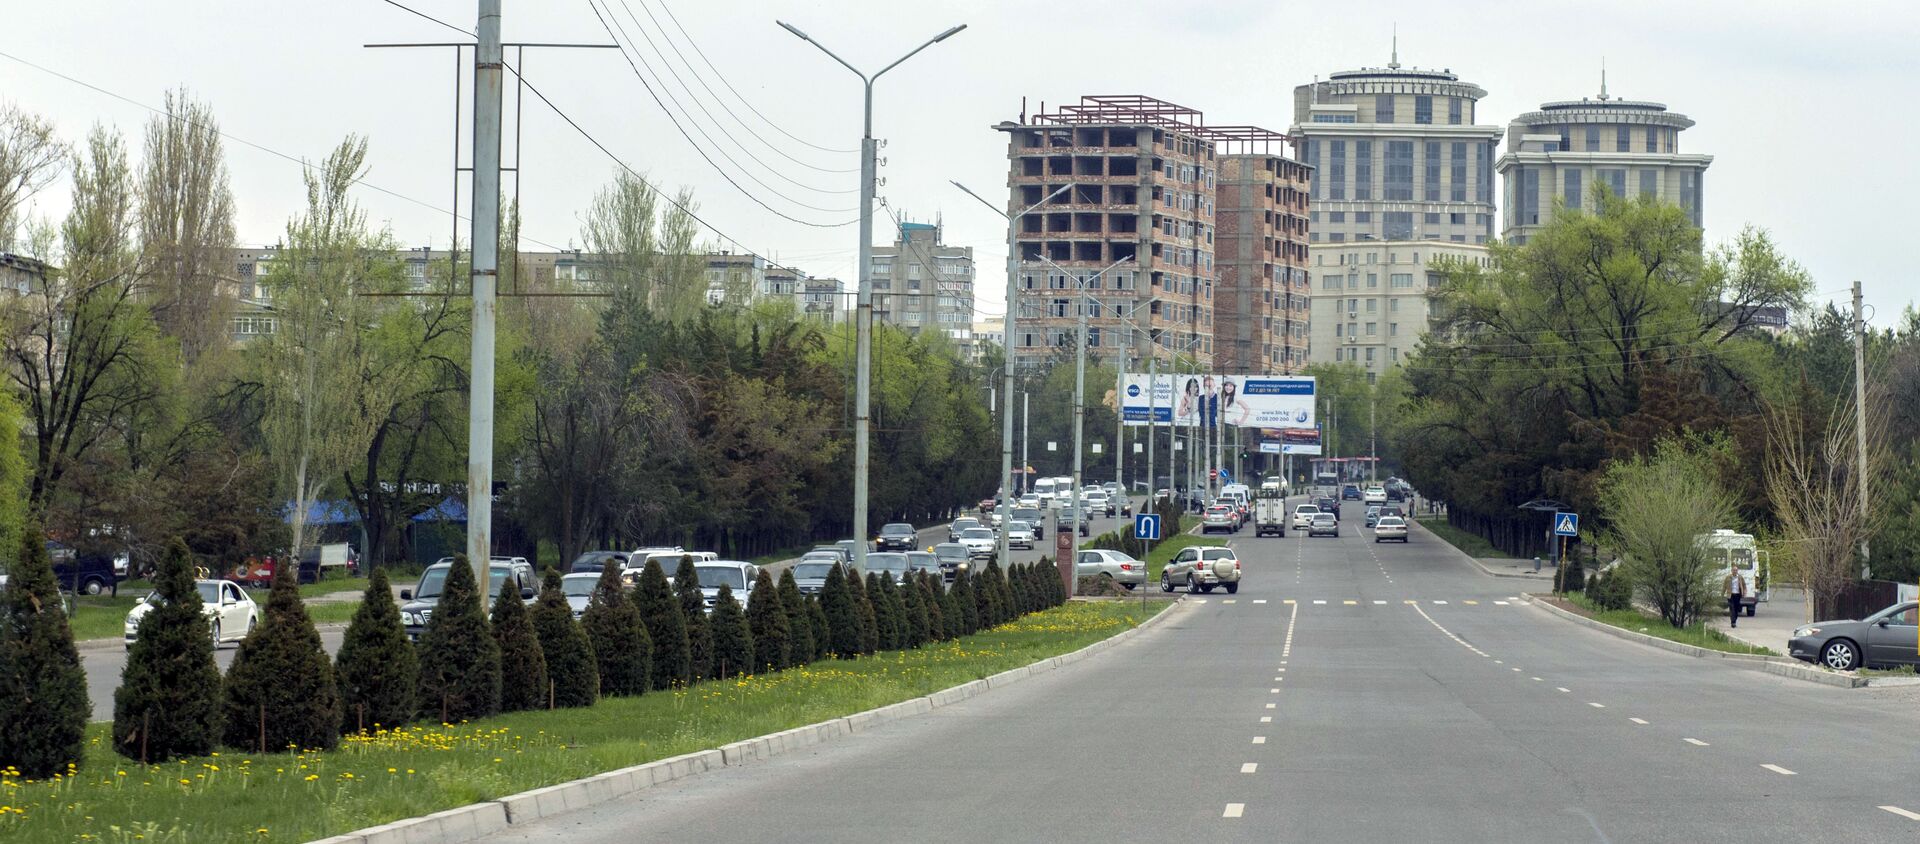 Автомобили на улице Аалы Токомбаева (Южная магистраль) в Бишкеке. Архивное фото - Sputnik Кыргызстан, 1920, 14.09.2021